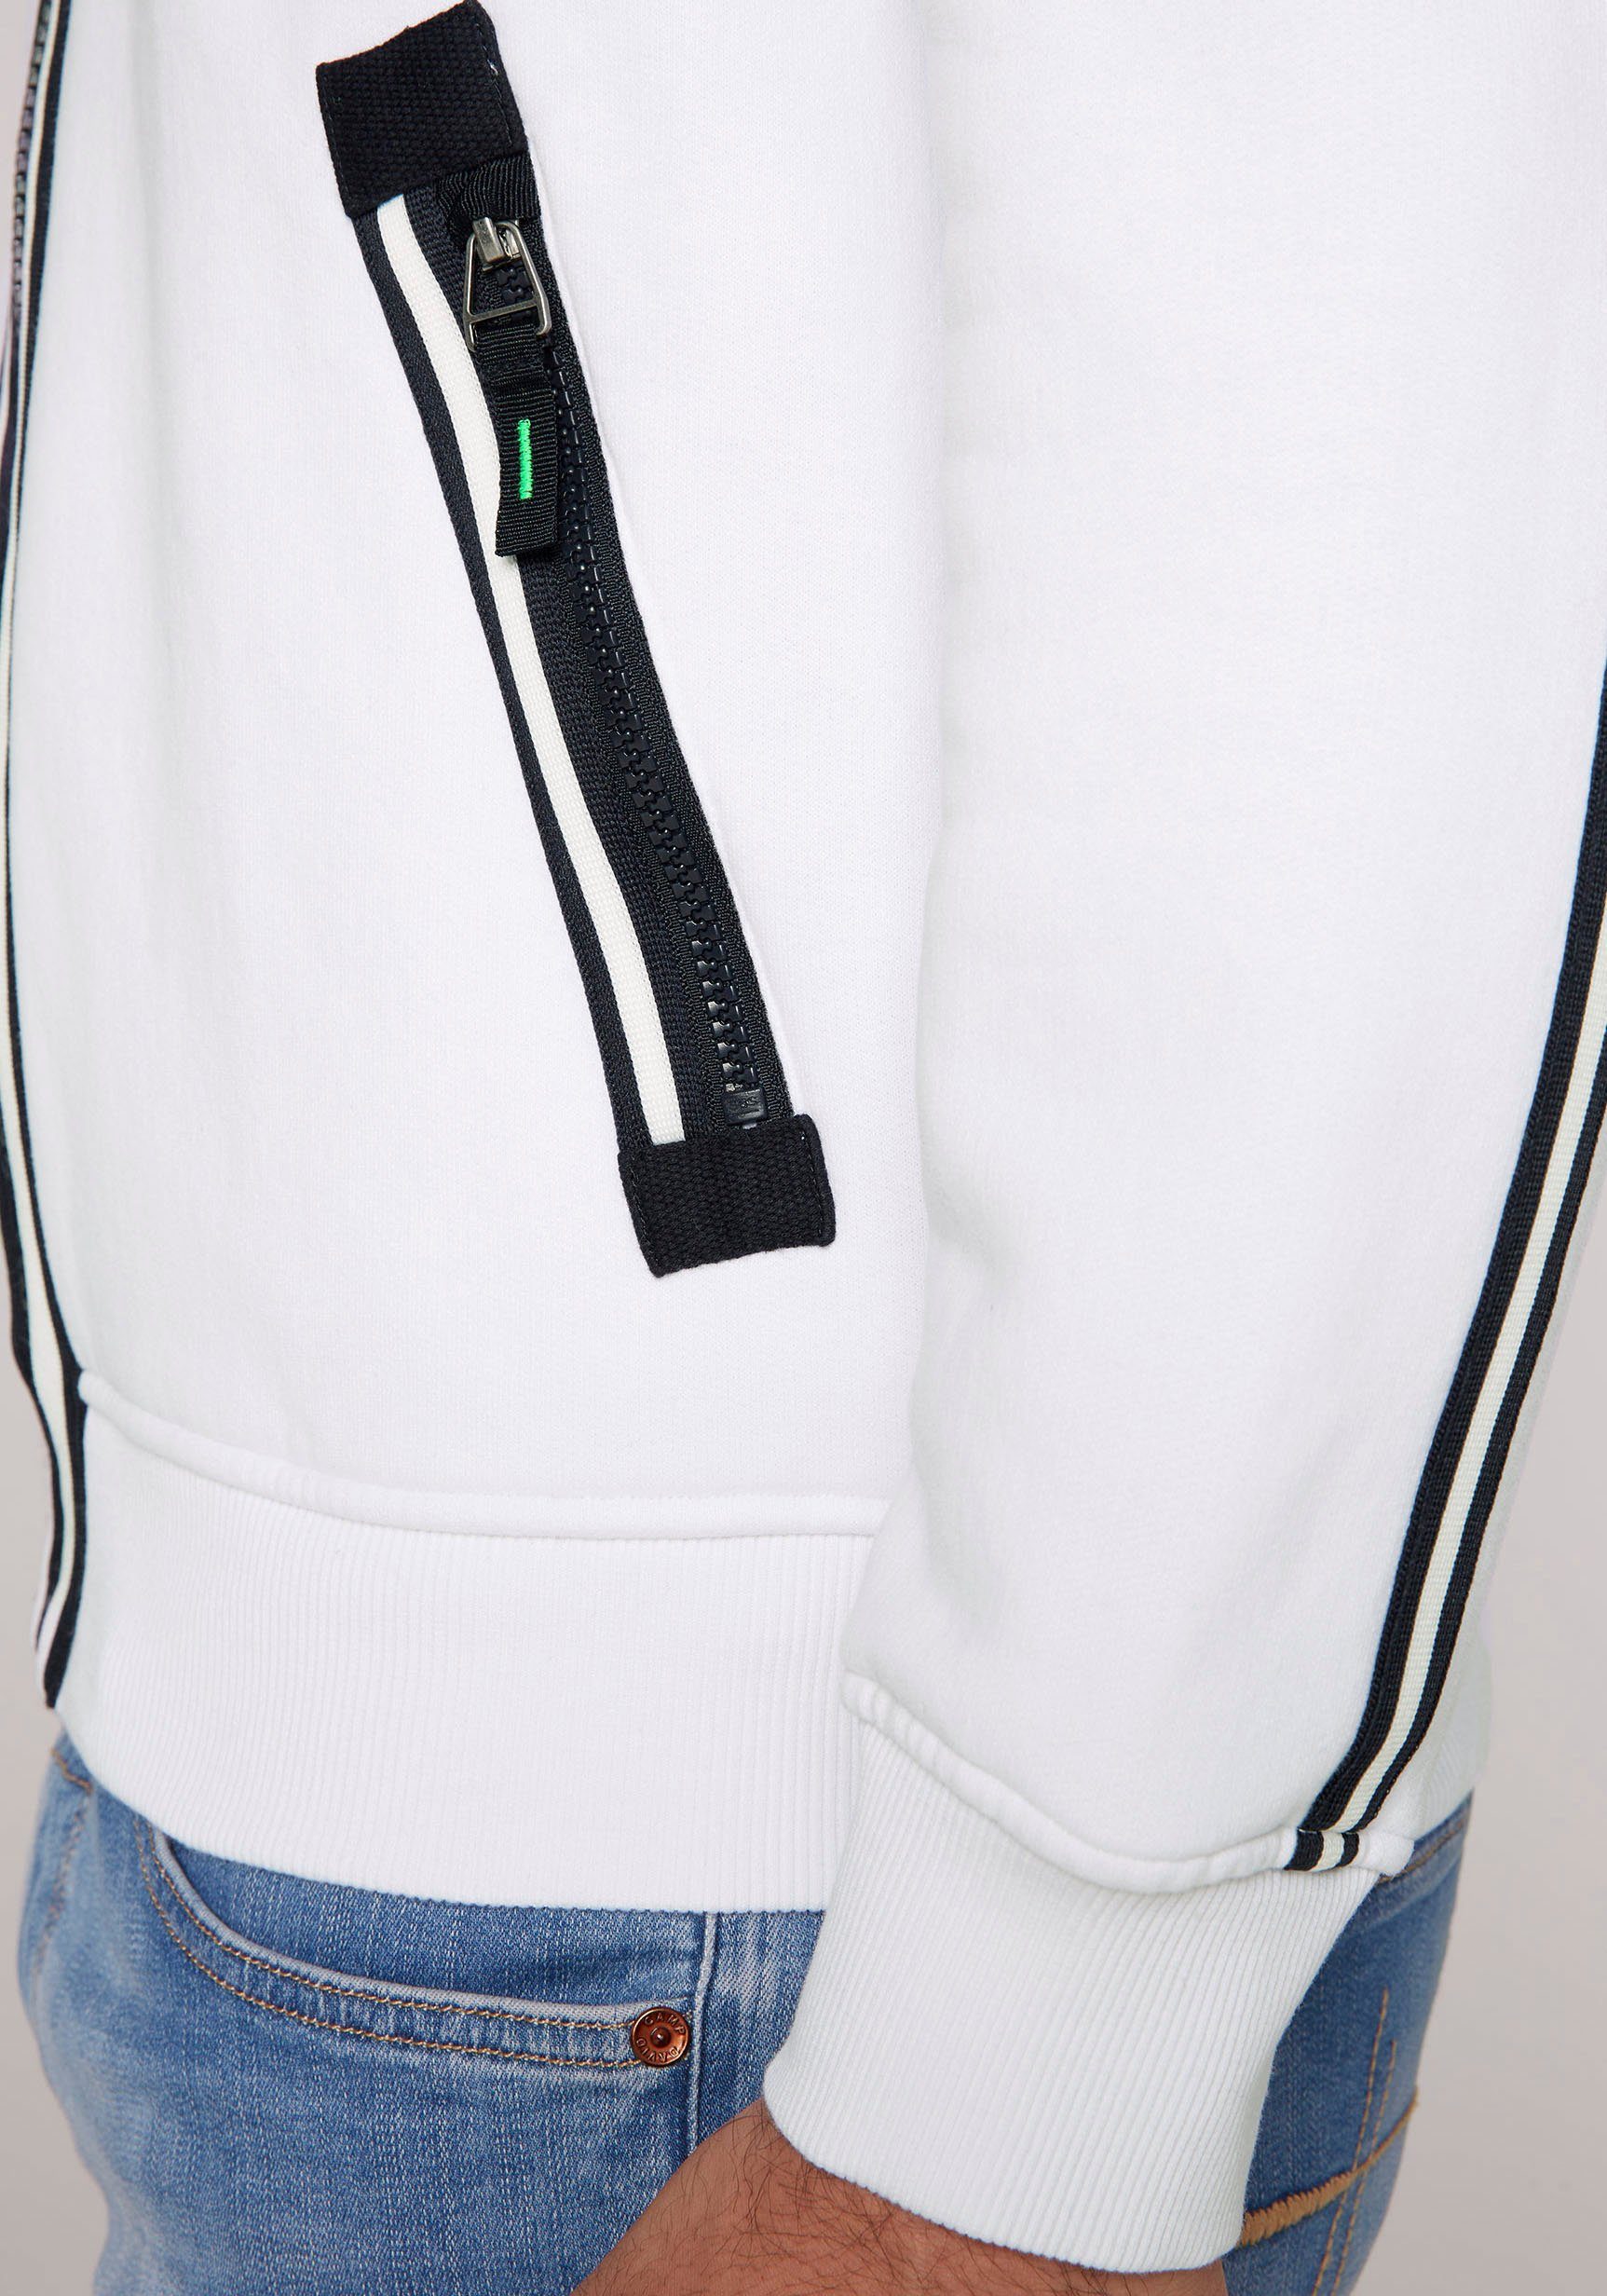 CAMP DAVID Kapuzensweatshirt mit Label-Applikationen auf Vorder- Rückseite und opticwhite